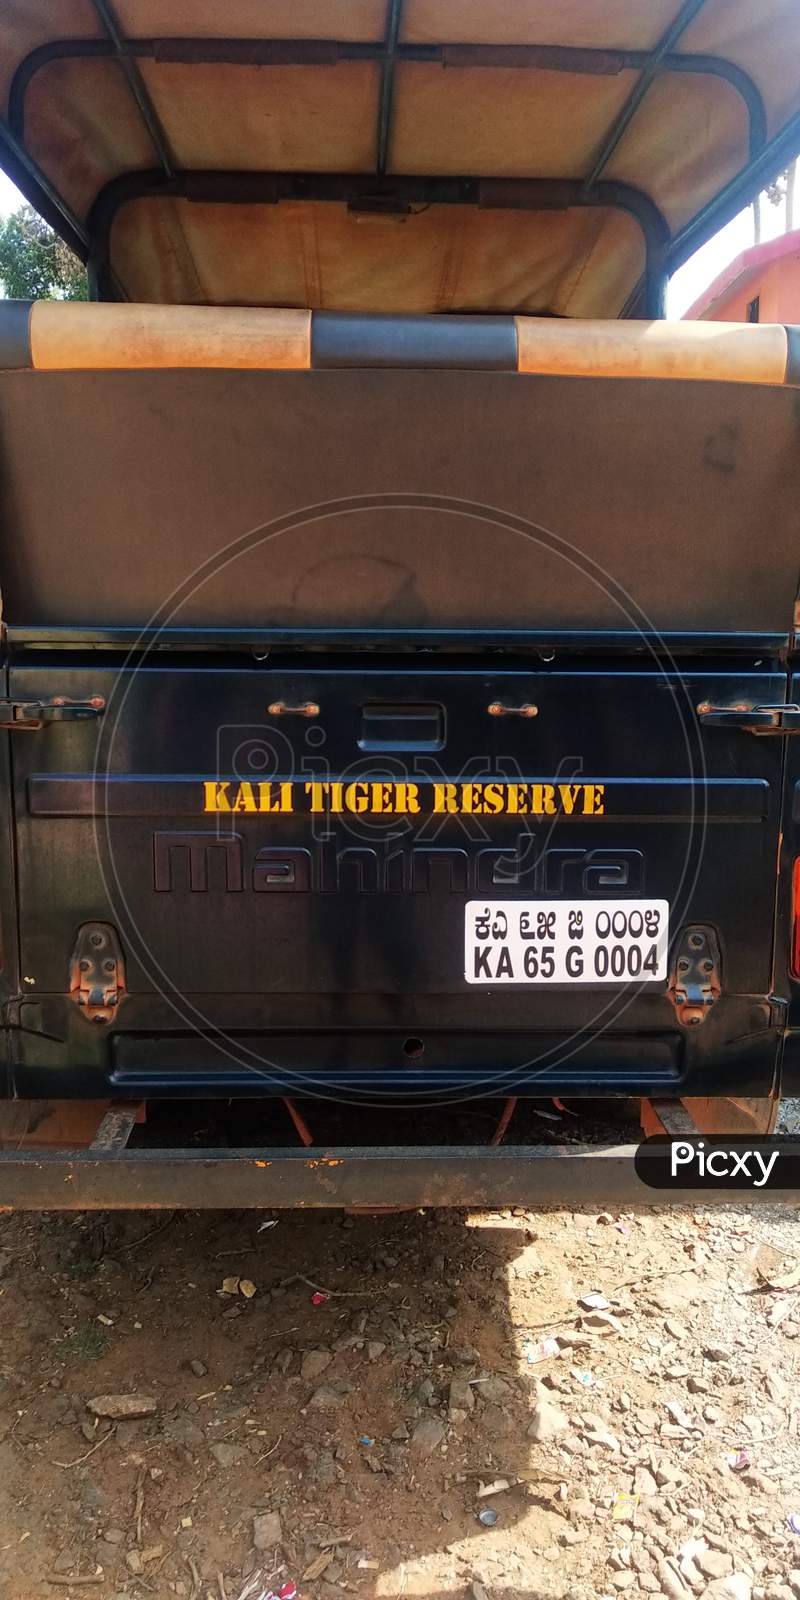 Kali tiger reserve